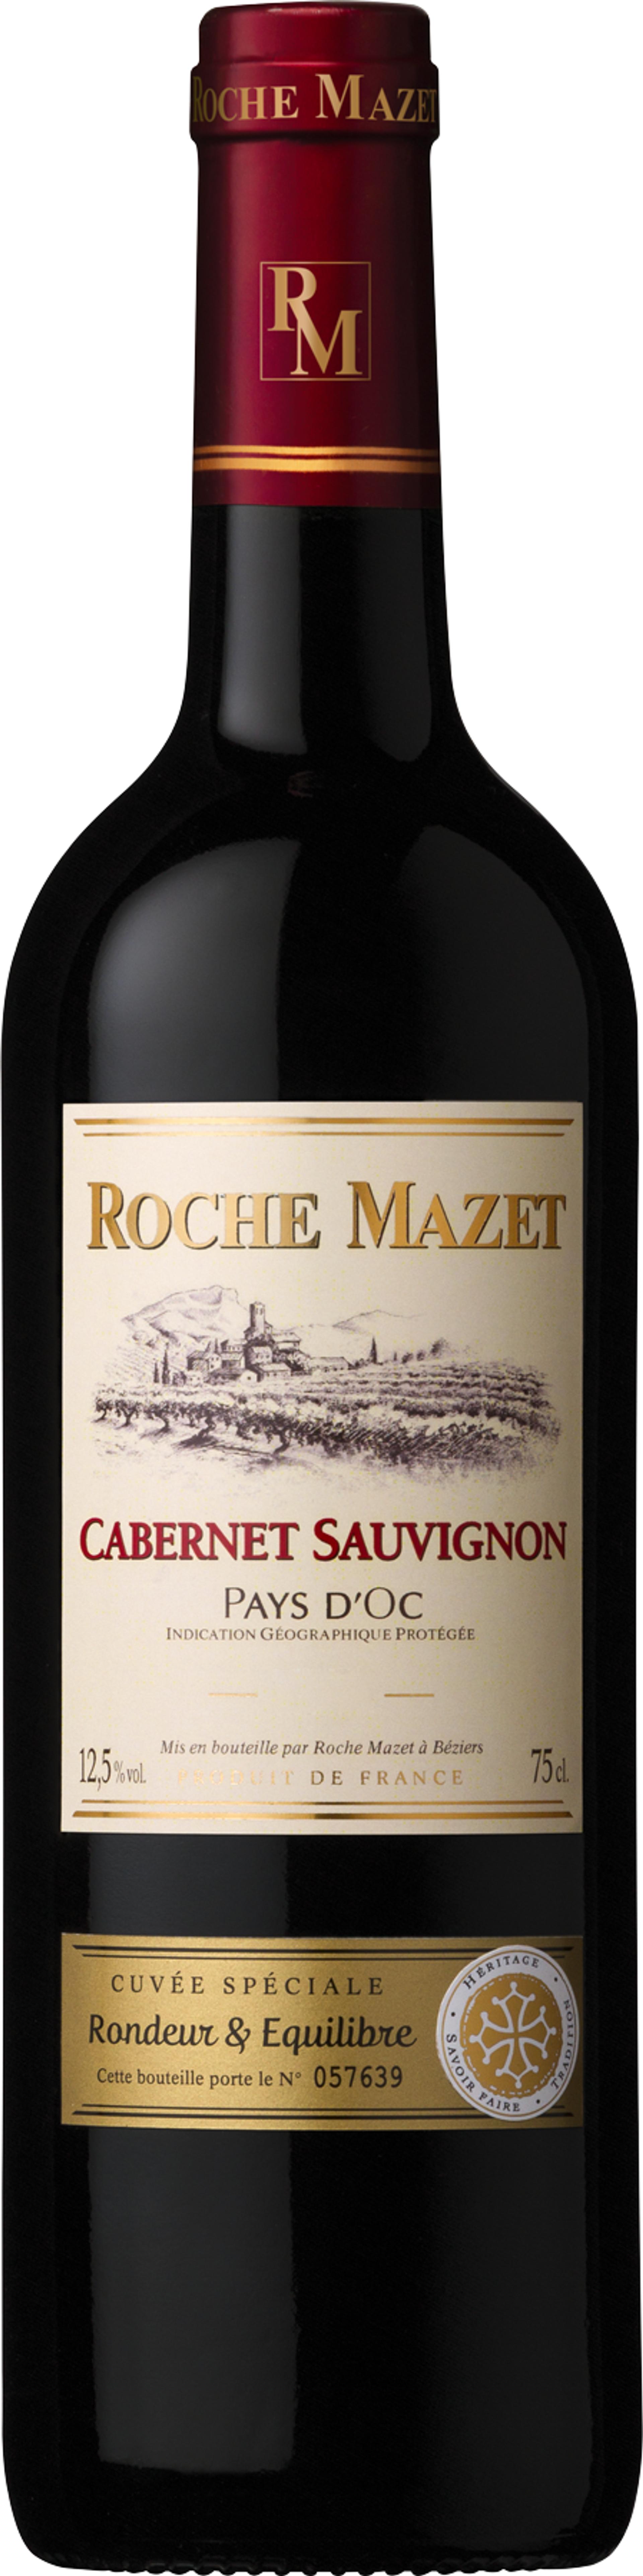 Roche Mazet Cabernet Sauvignon